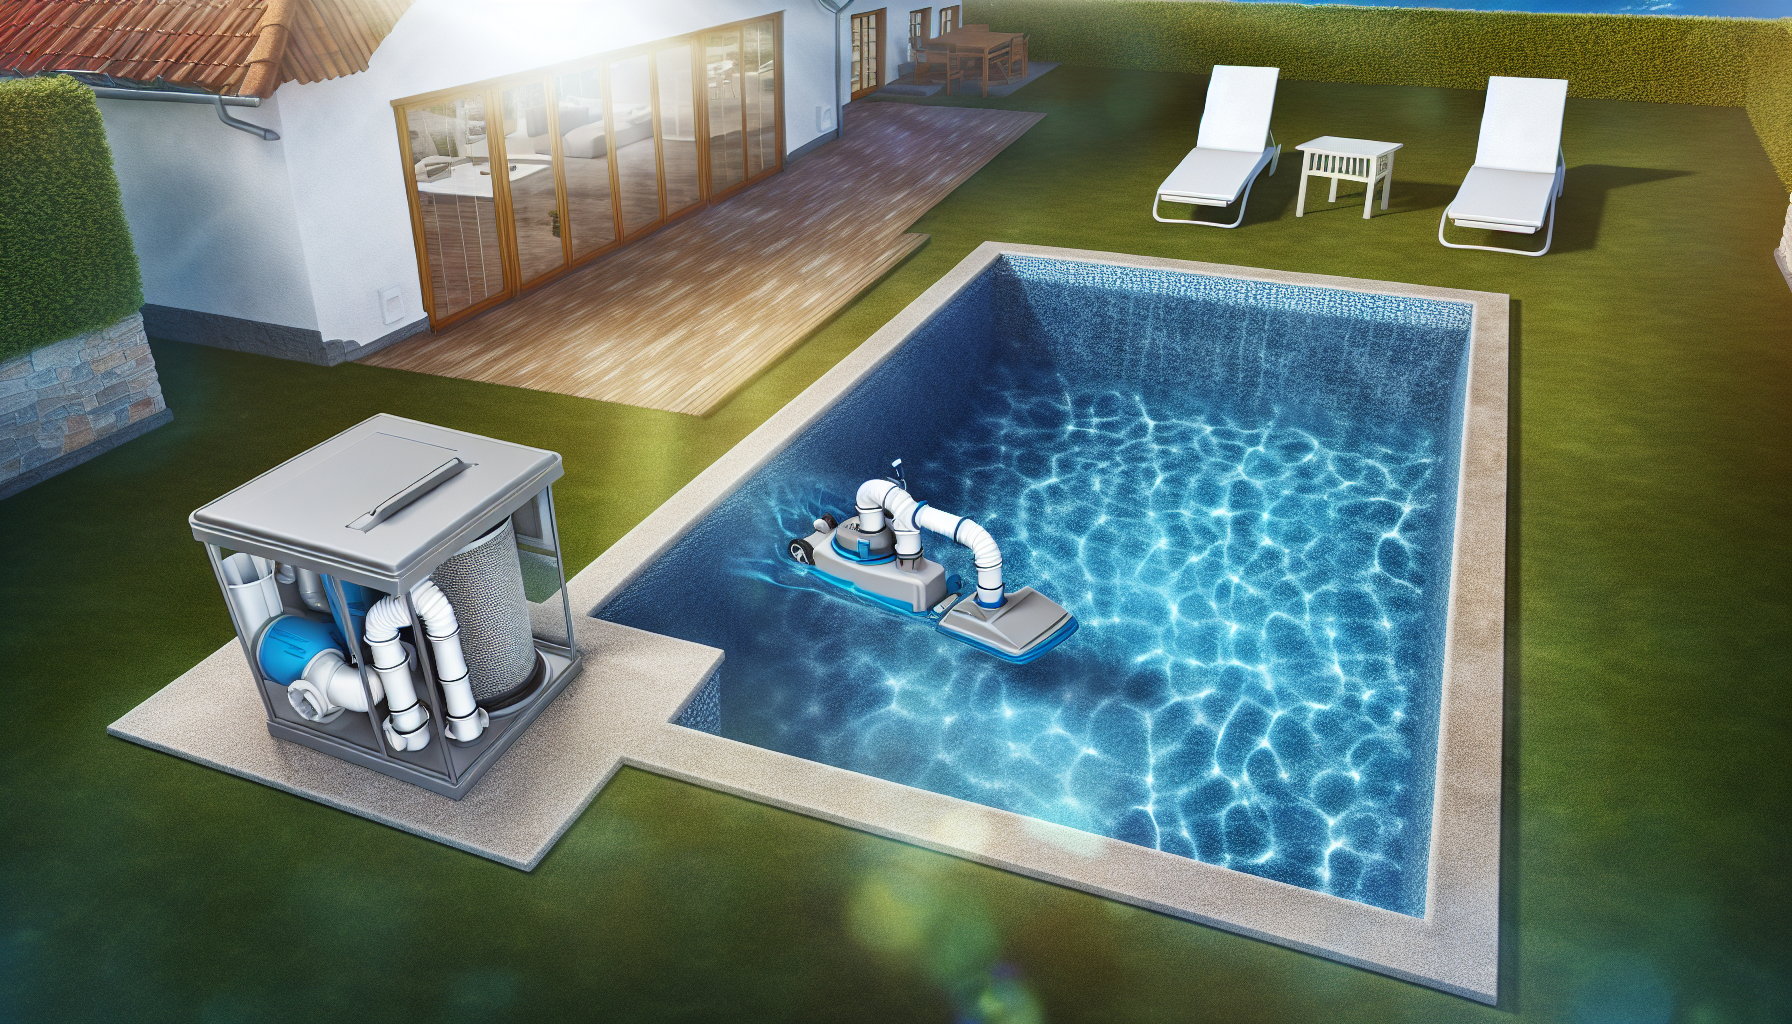 Ein Swimmingpool mit Reinigungsroboter und Filteranlage im Garten eines Hauses.